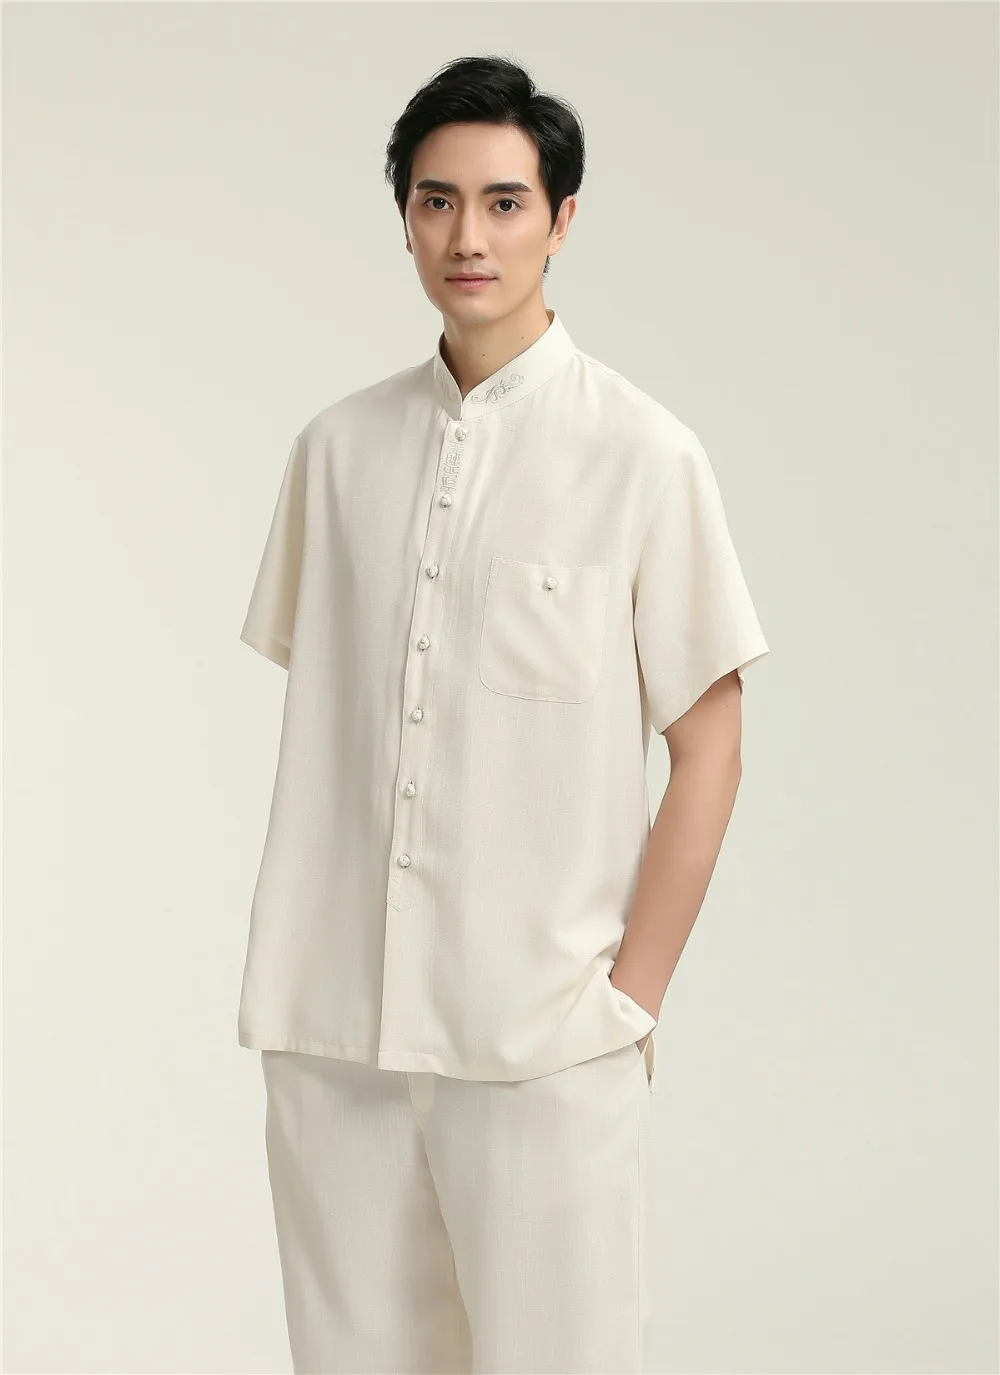 Шанхай история Льняная мужская рубашка Китайская традиционная мужская одежда костюм Тан Китайская одежда для мужчин Топ кунг-фу